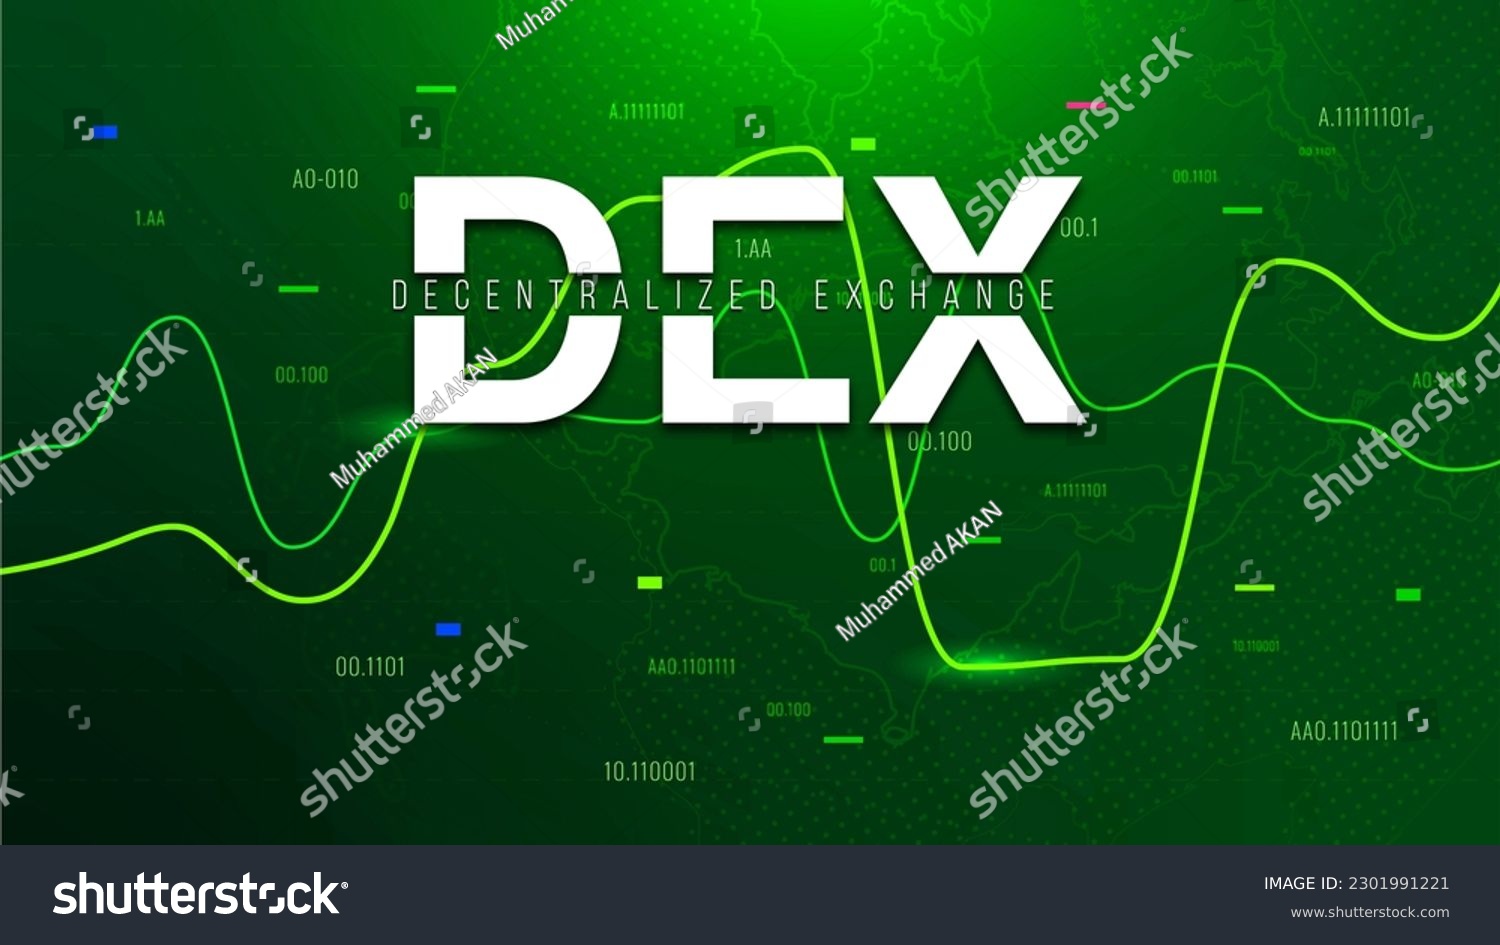 Decentralized Exchanges (Dex)